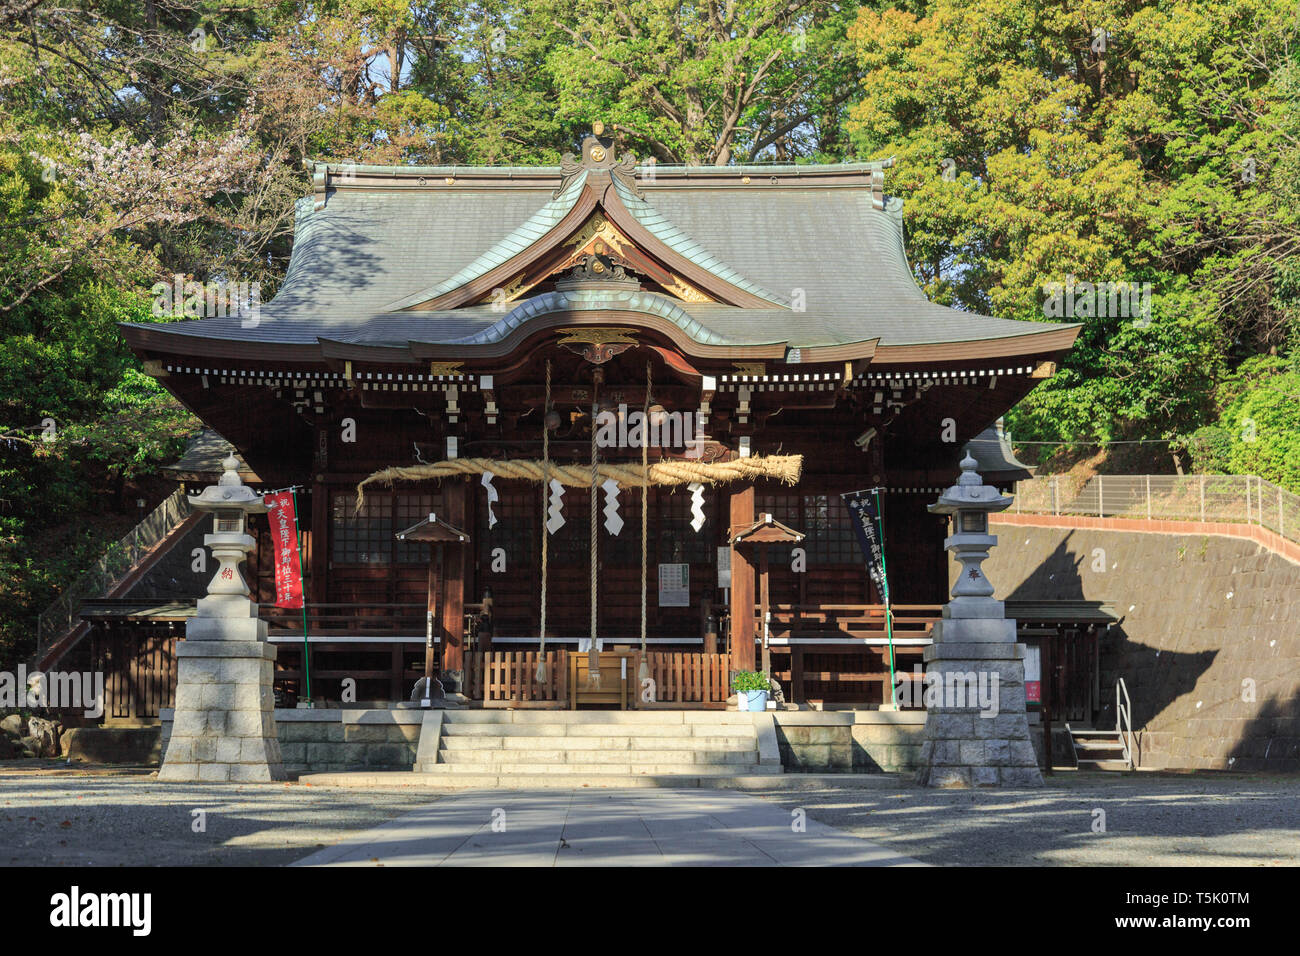 Le bâtiment principal de l'Maginu culte origine enregistrés une divinité féminine, établies avant 1688 mais l'année exacte inconnue, situé à Kawasaki, Japon. Banque D'Images